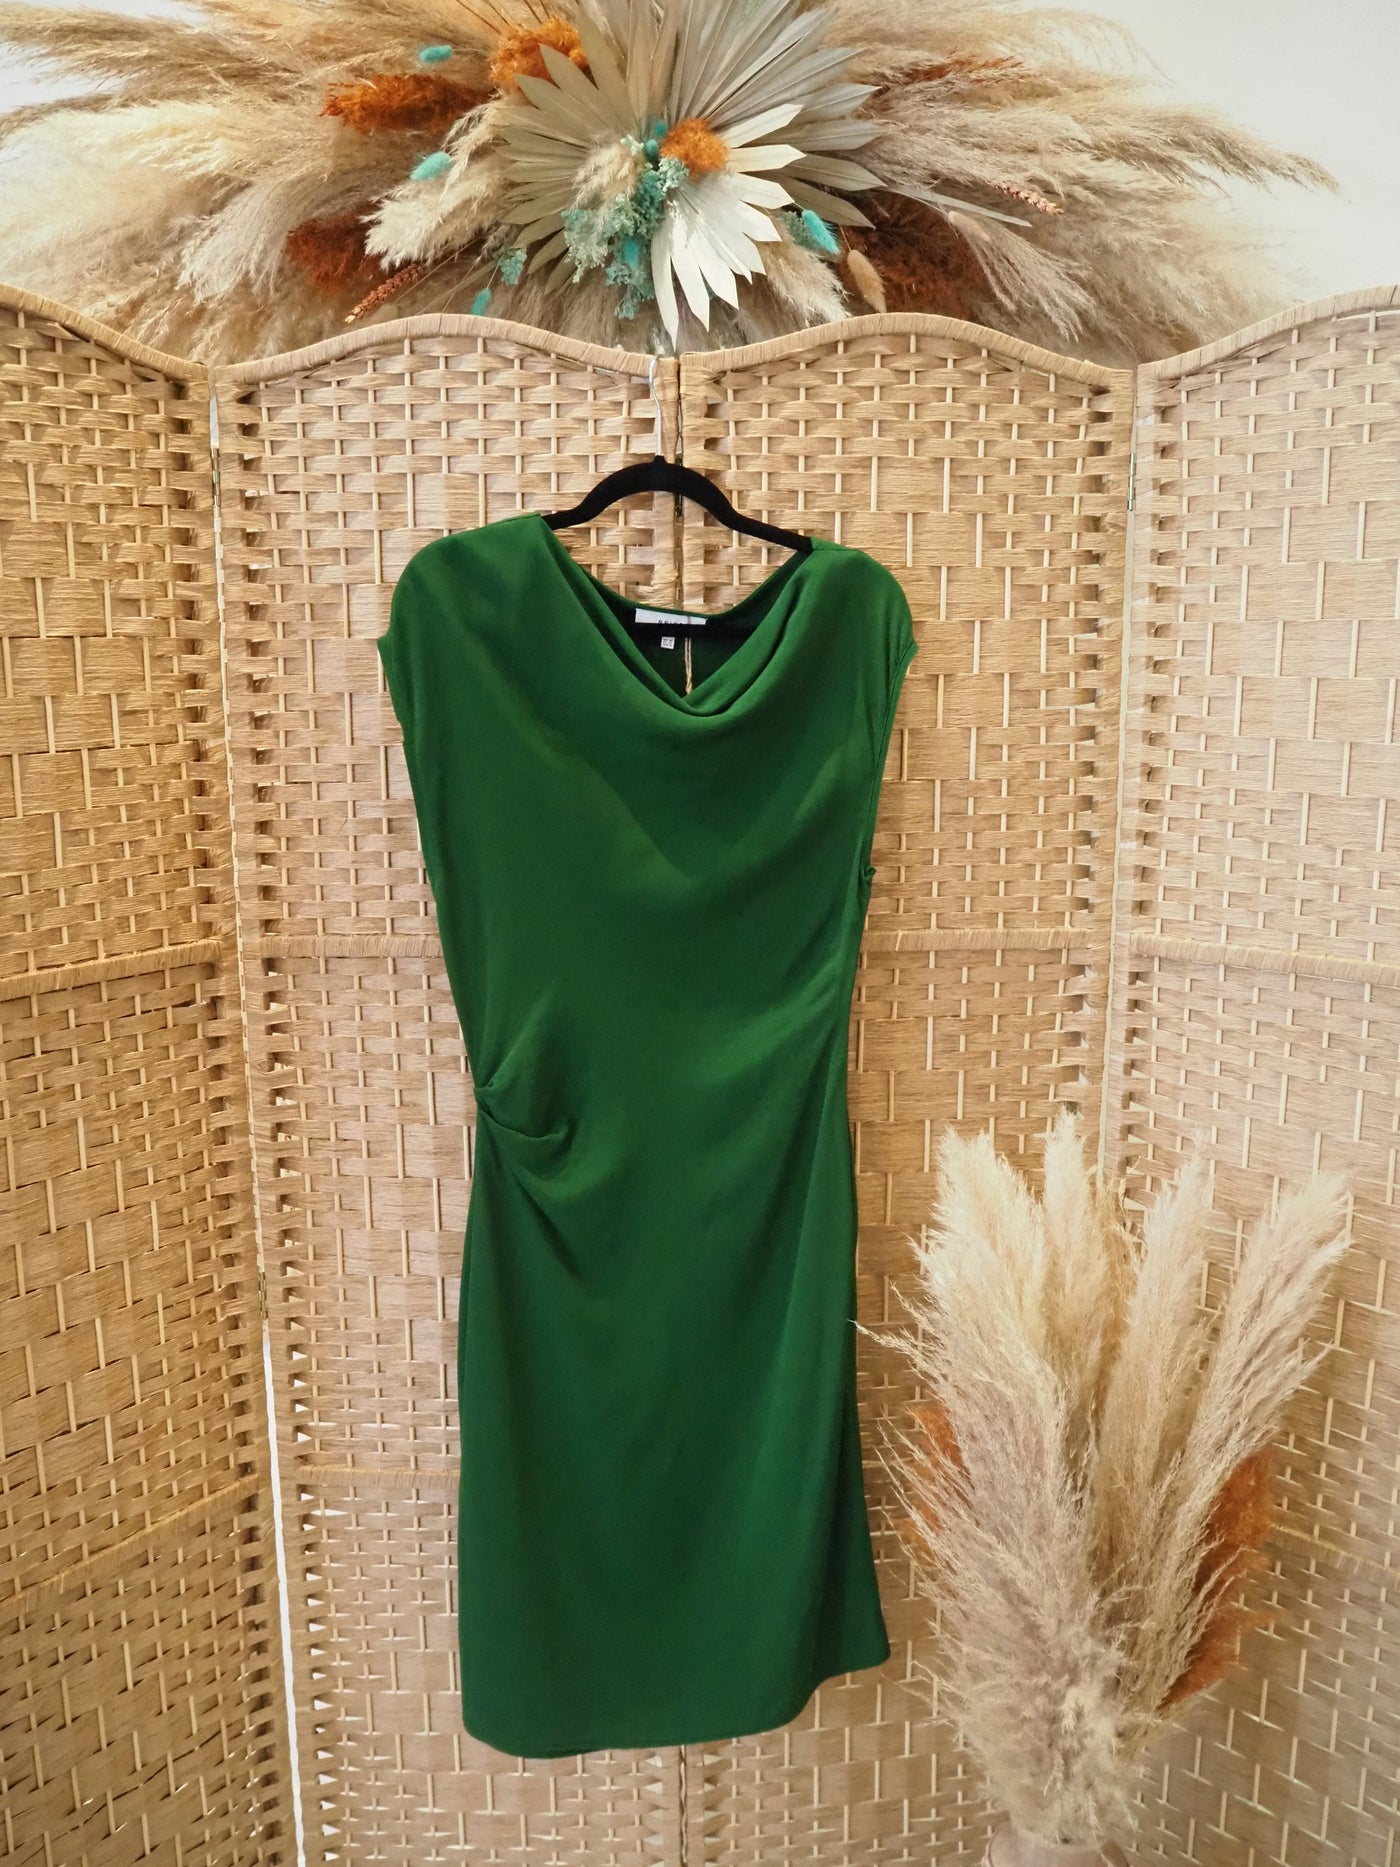 Reiss Green Dress Size 10